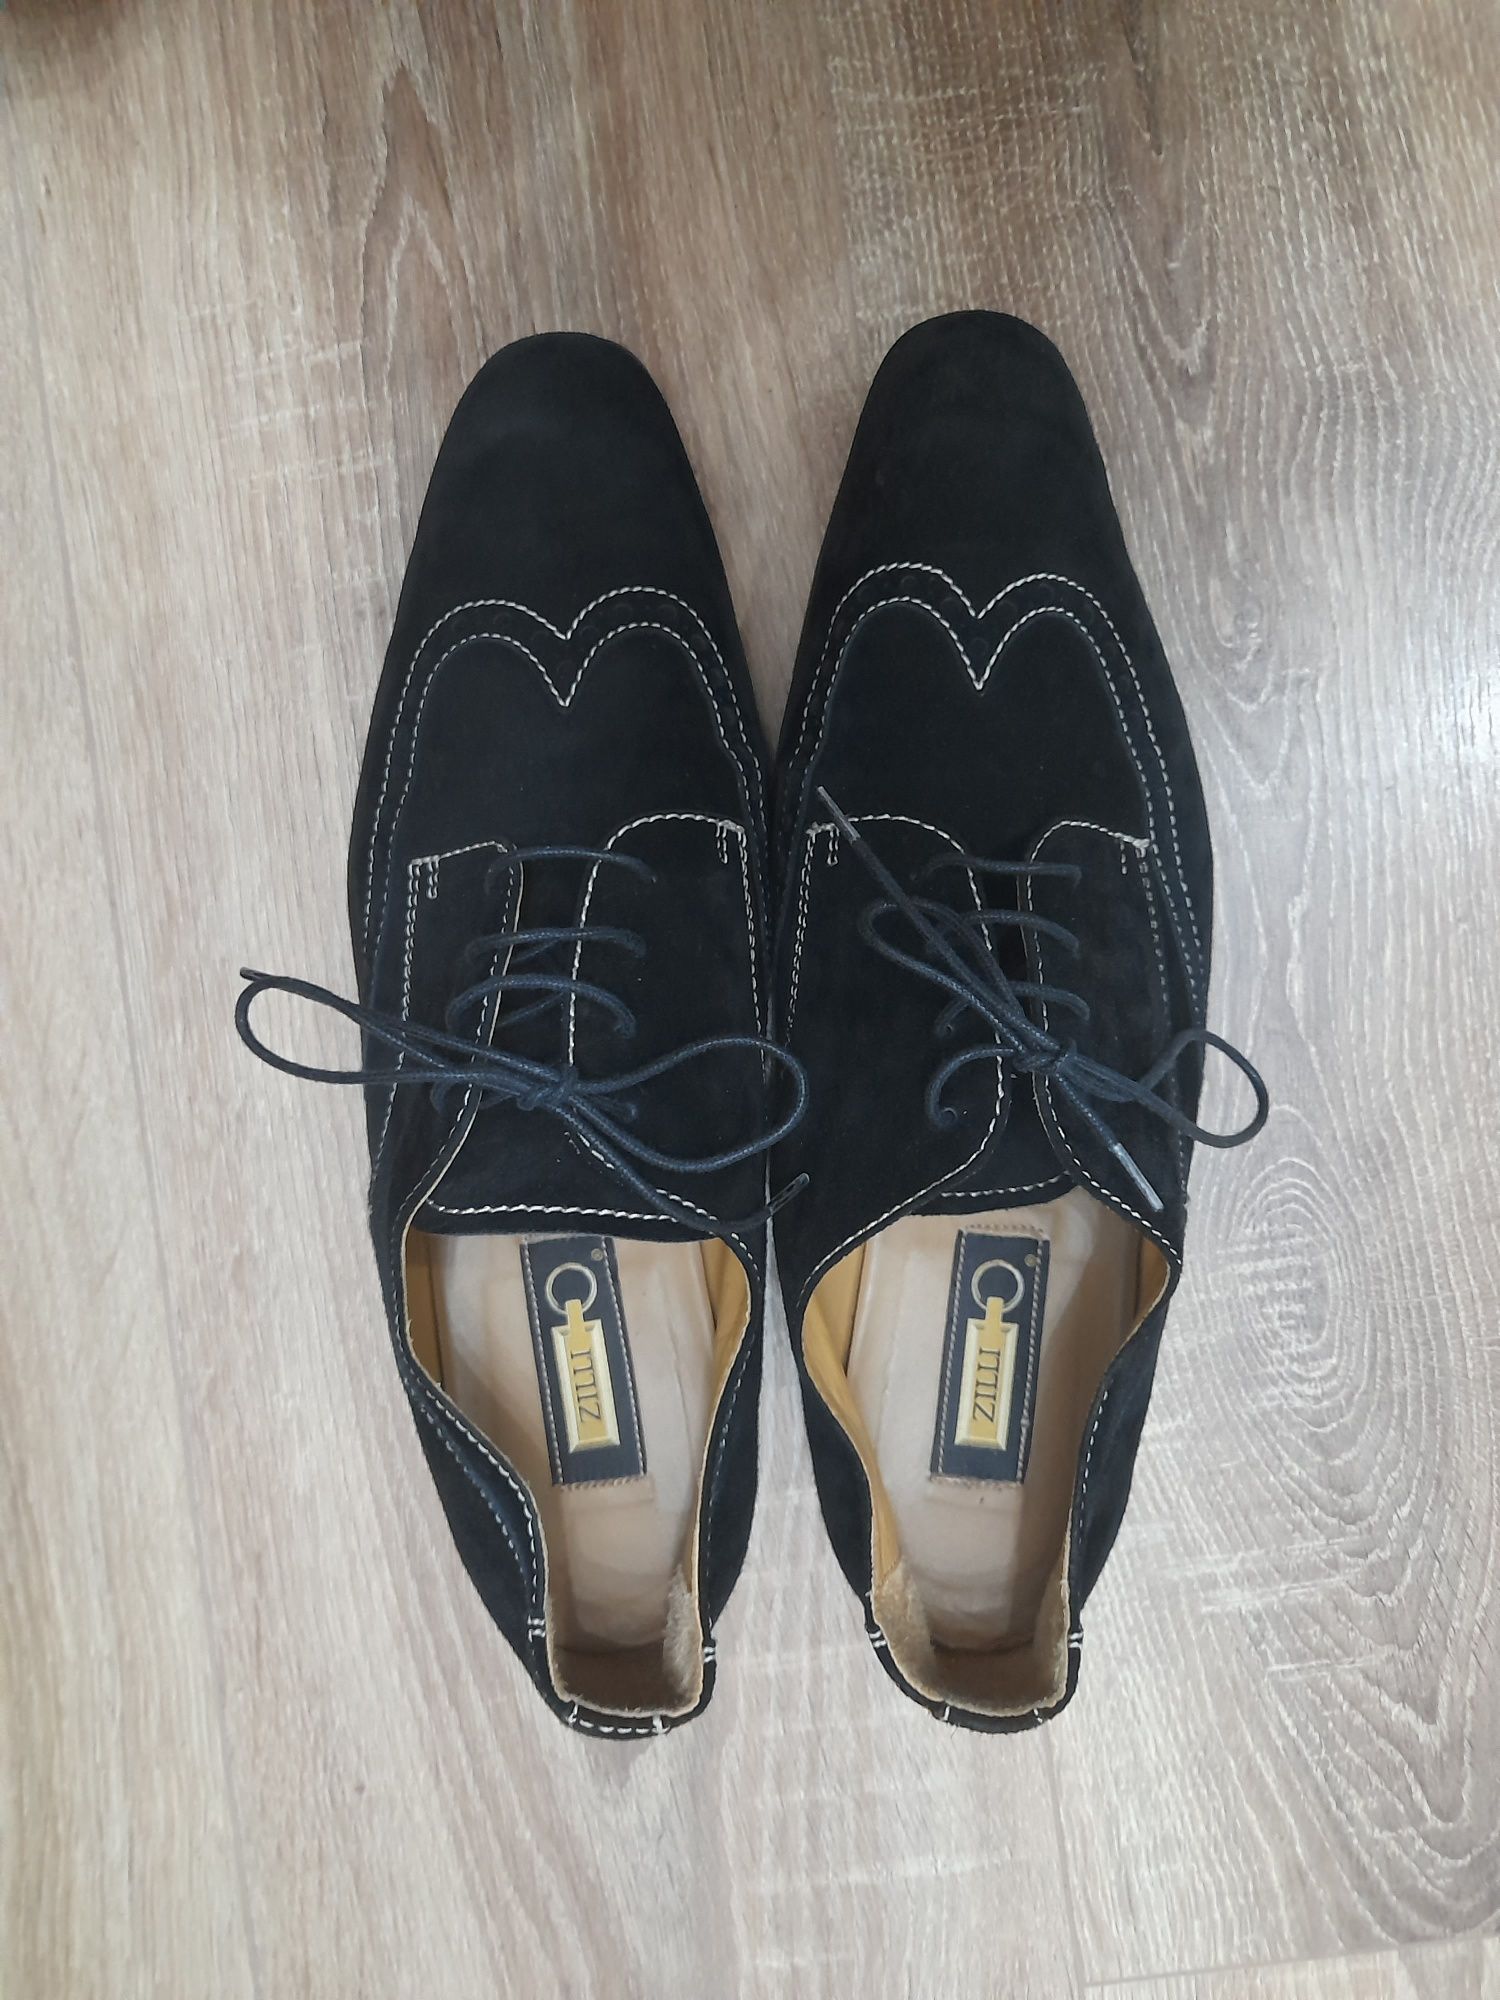 Pantofi Zilli bărbați, Pantofi de renume